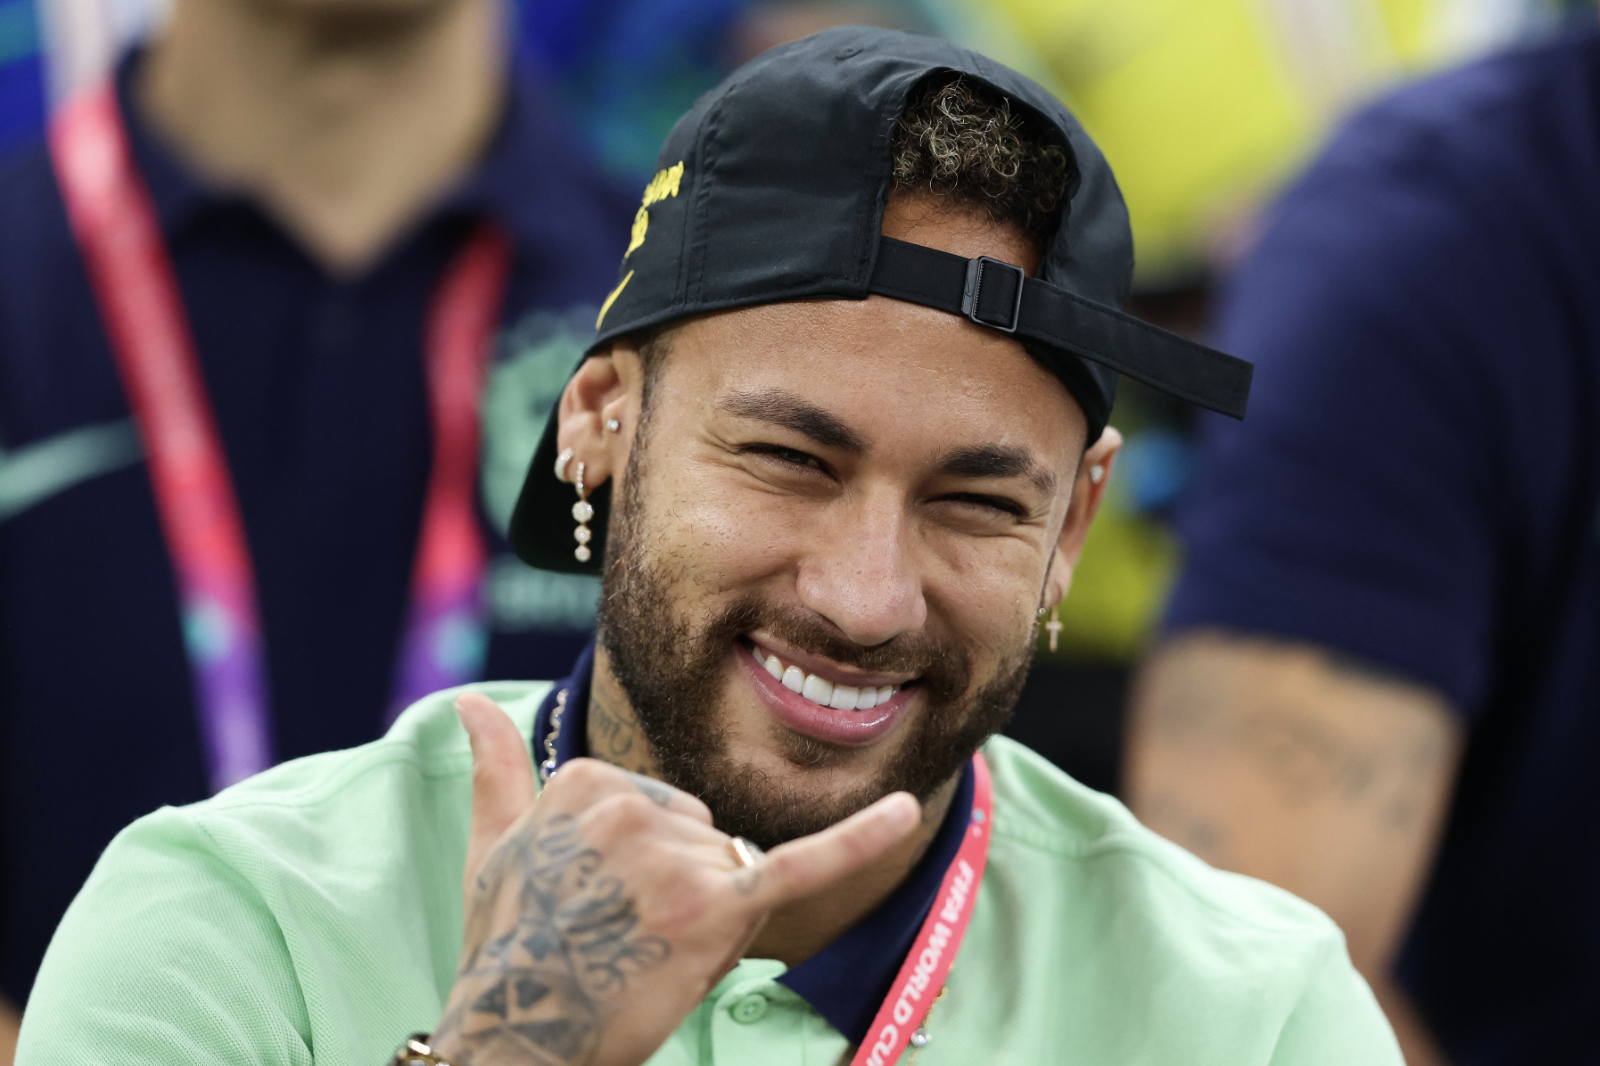 Intrusión Trastorno Polinizador Neymar podría tocar el balón este sábado y estar listo ante Corea - UNANIMO  Deportes